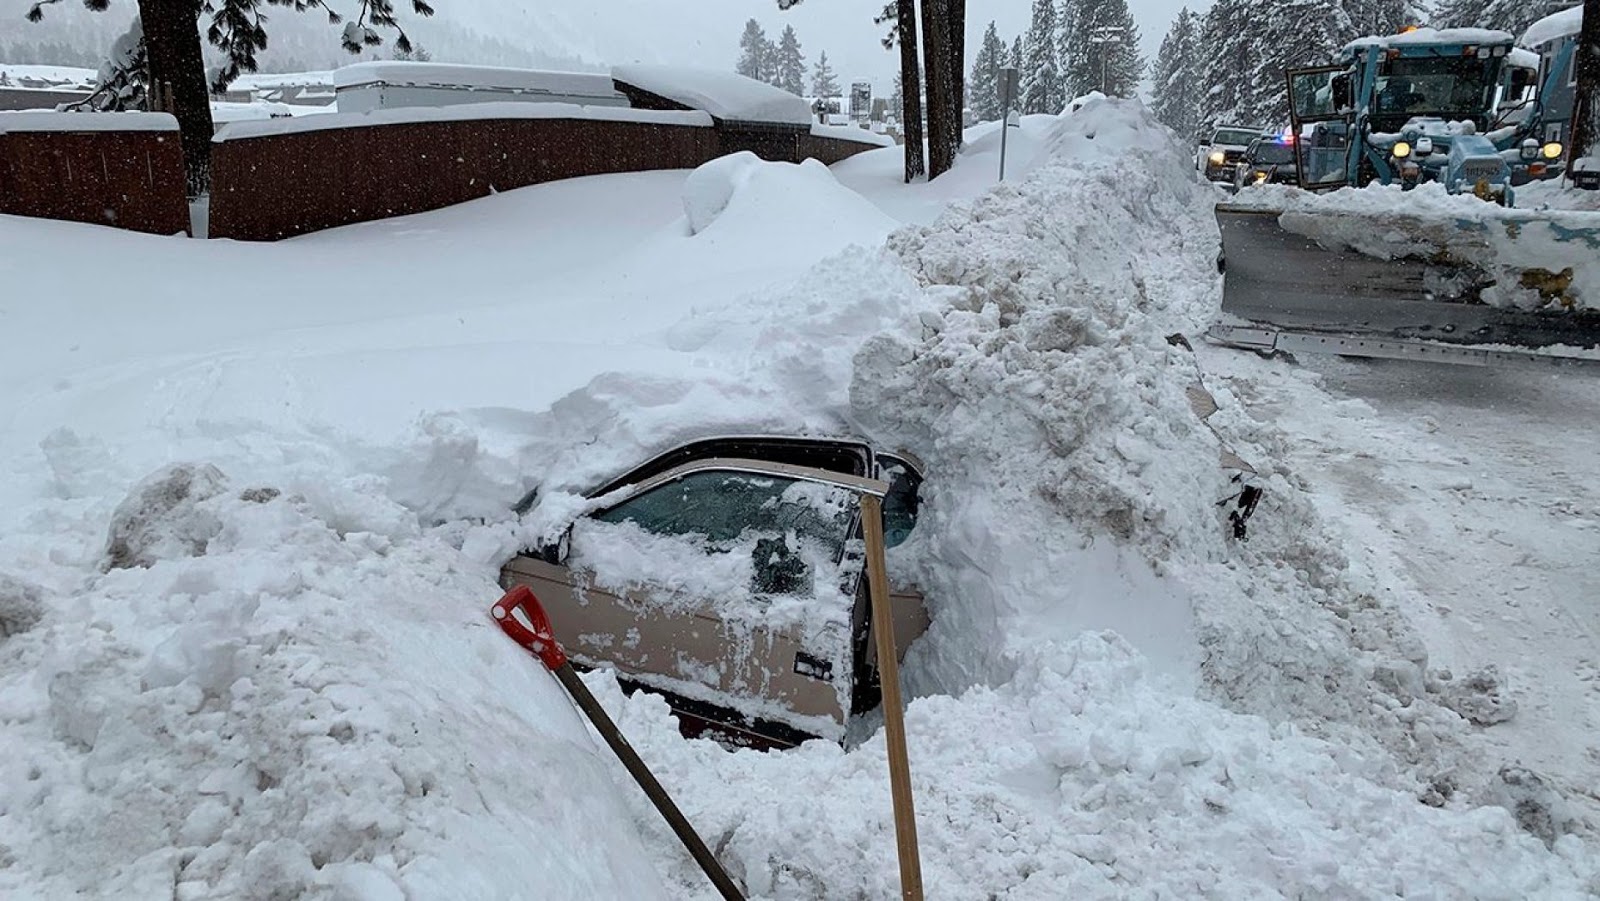 Выпавший снег замело. Машину засыпало снегом. Машина завалена снегом. Откапывает машину. Машина в сугробе.